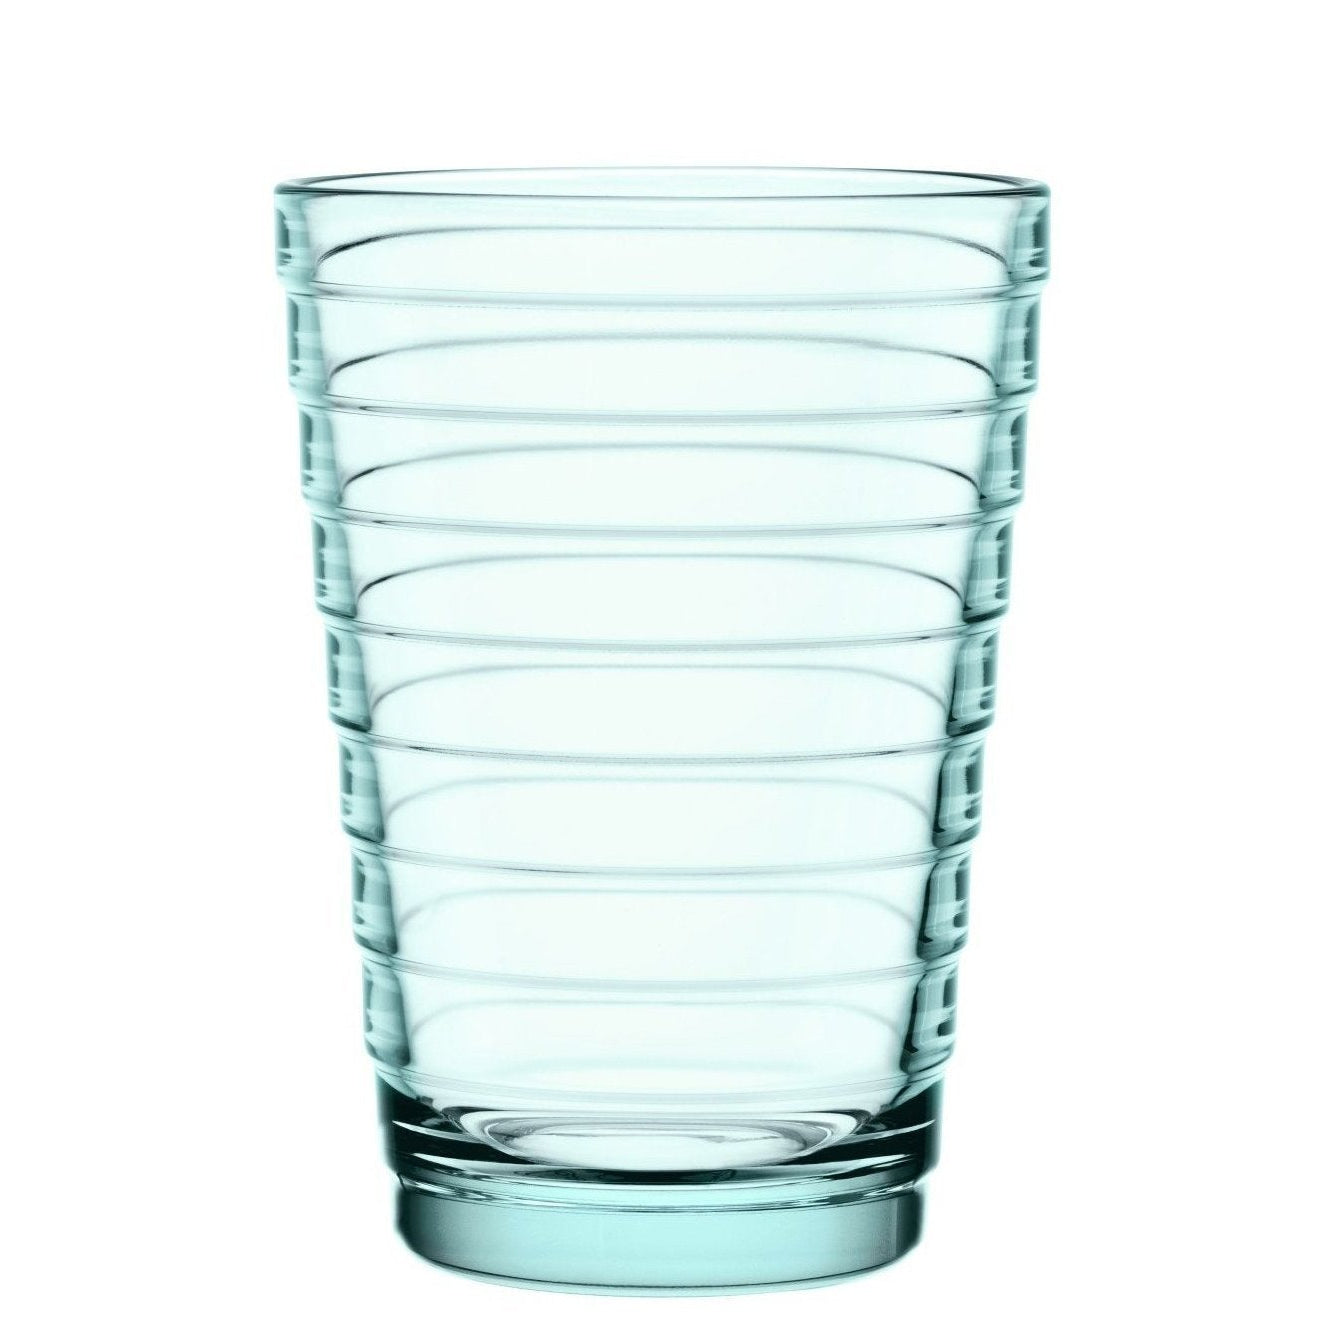 Iittala Aino aalto glas vatten grönt 2 st, 33cl